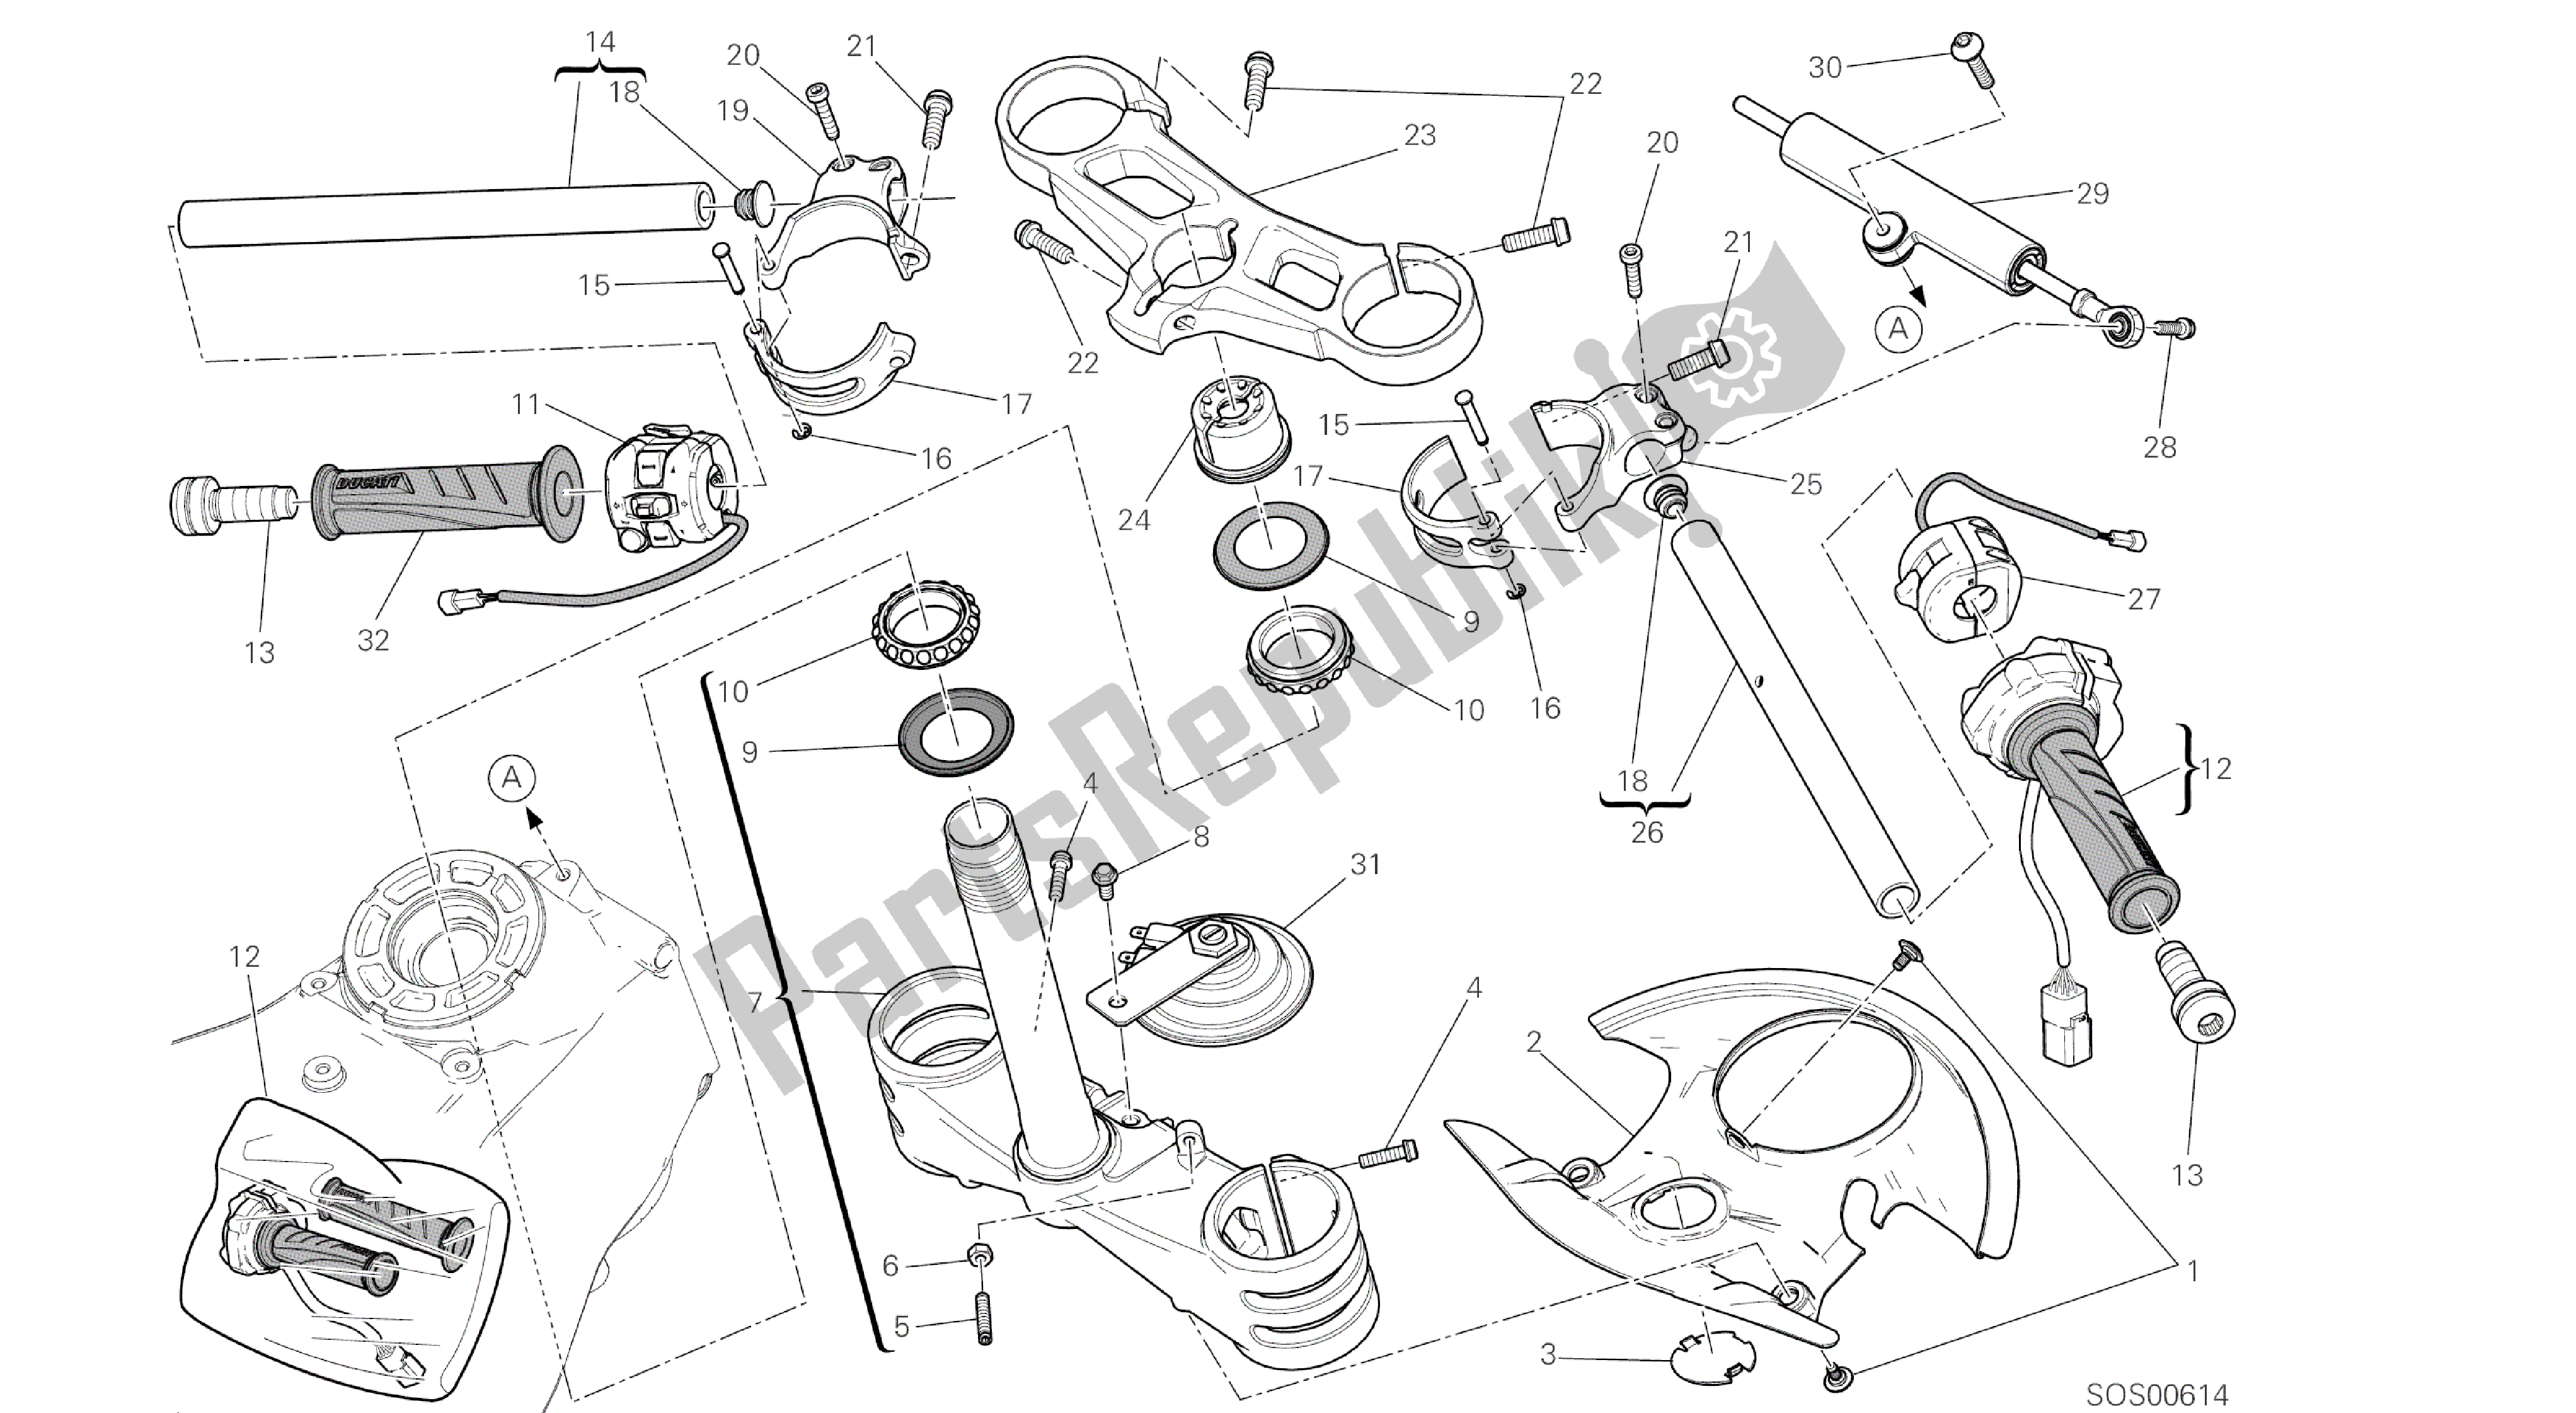 Todas las partes para Dibujo 021 - Semimanubri - Marco De Grupo Ammortizzatore Di Sterzo [mod: 959,959 Aws] de Ducati Panigale 959 2016